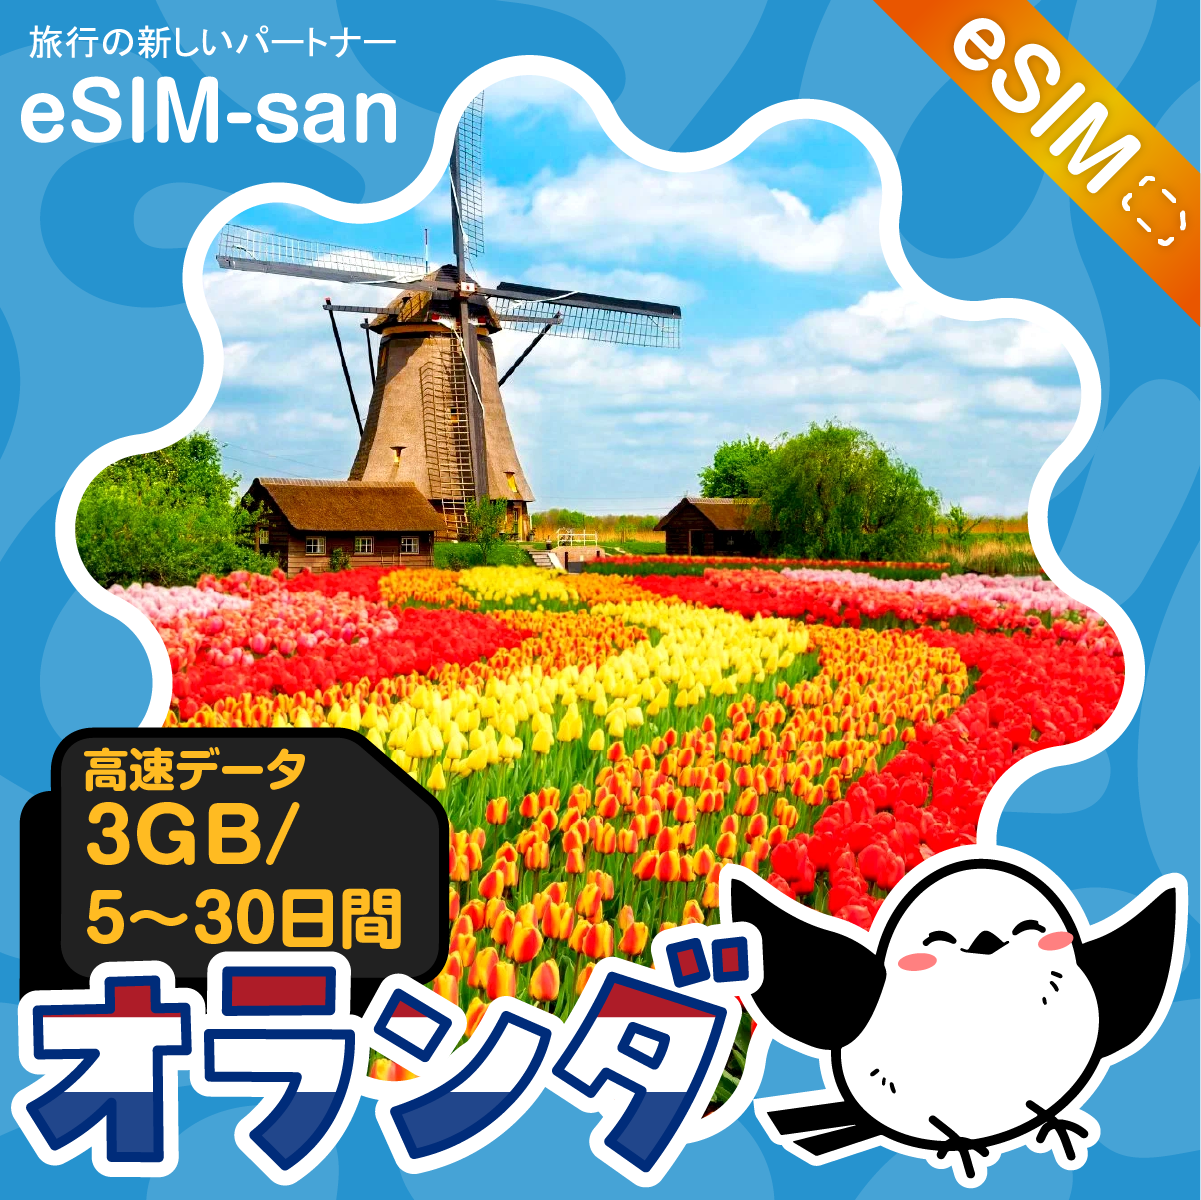 オランダeSIMの3GB/dayプラン画像_eSIM-san